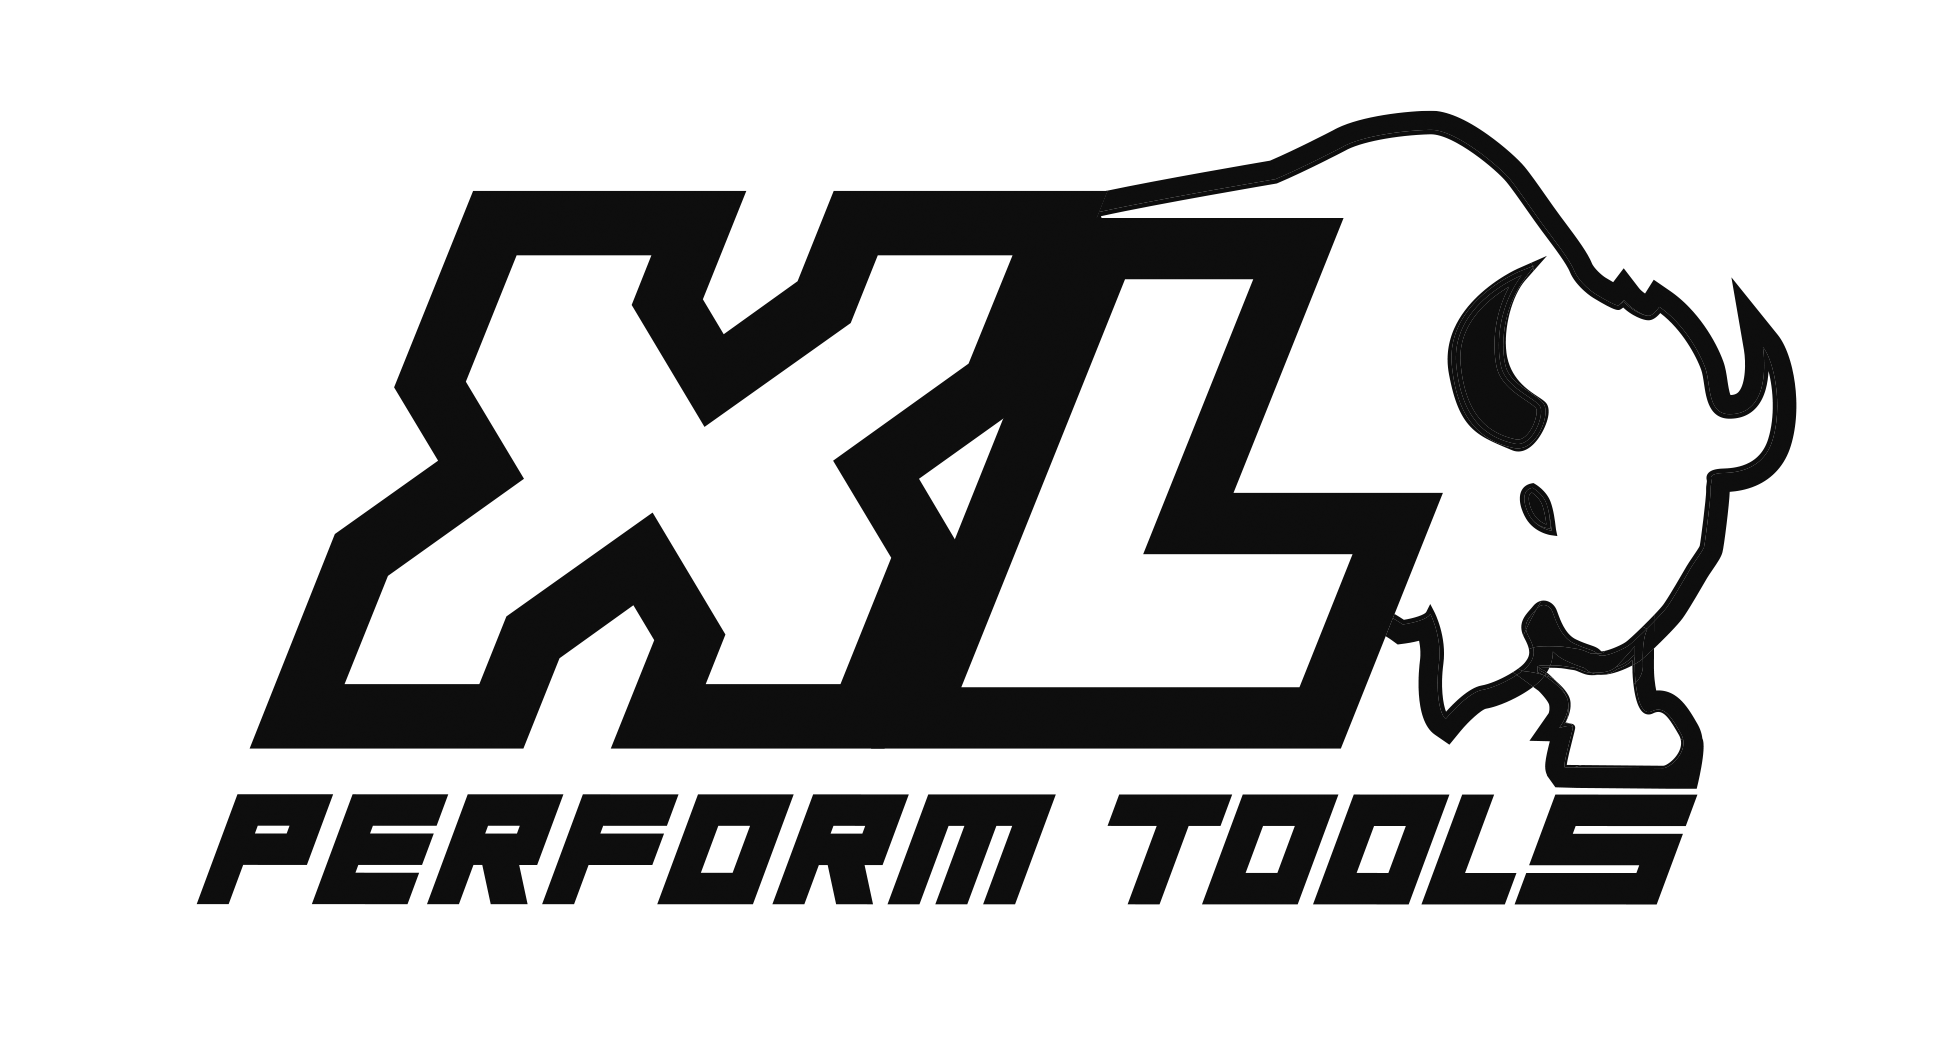 xl perform tools 2023